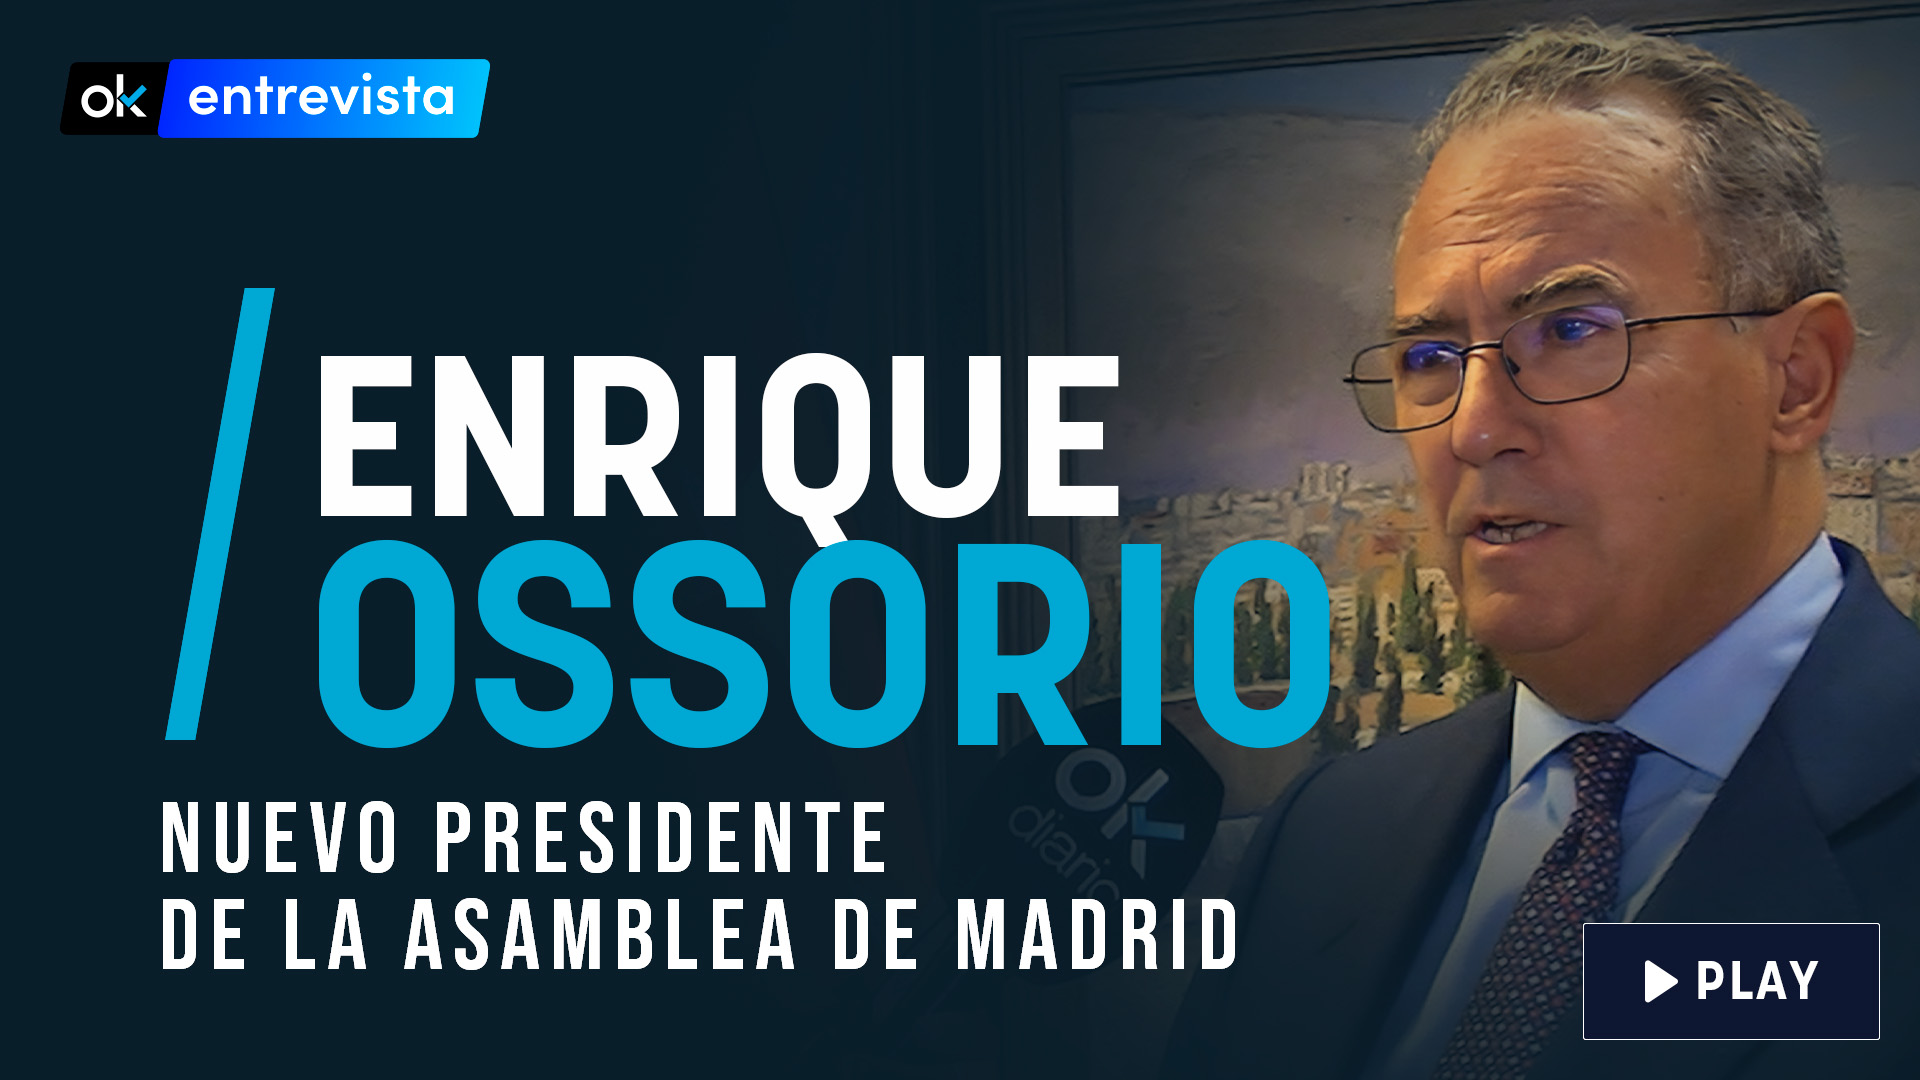 El presidente de la Asamblea de Madrid, Enrique Ossorio.